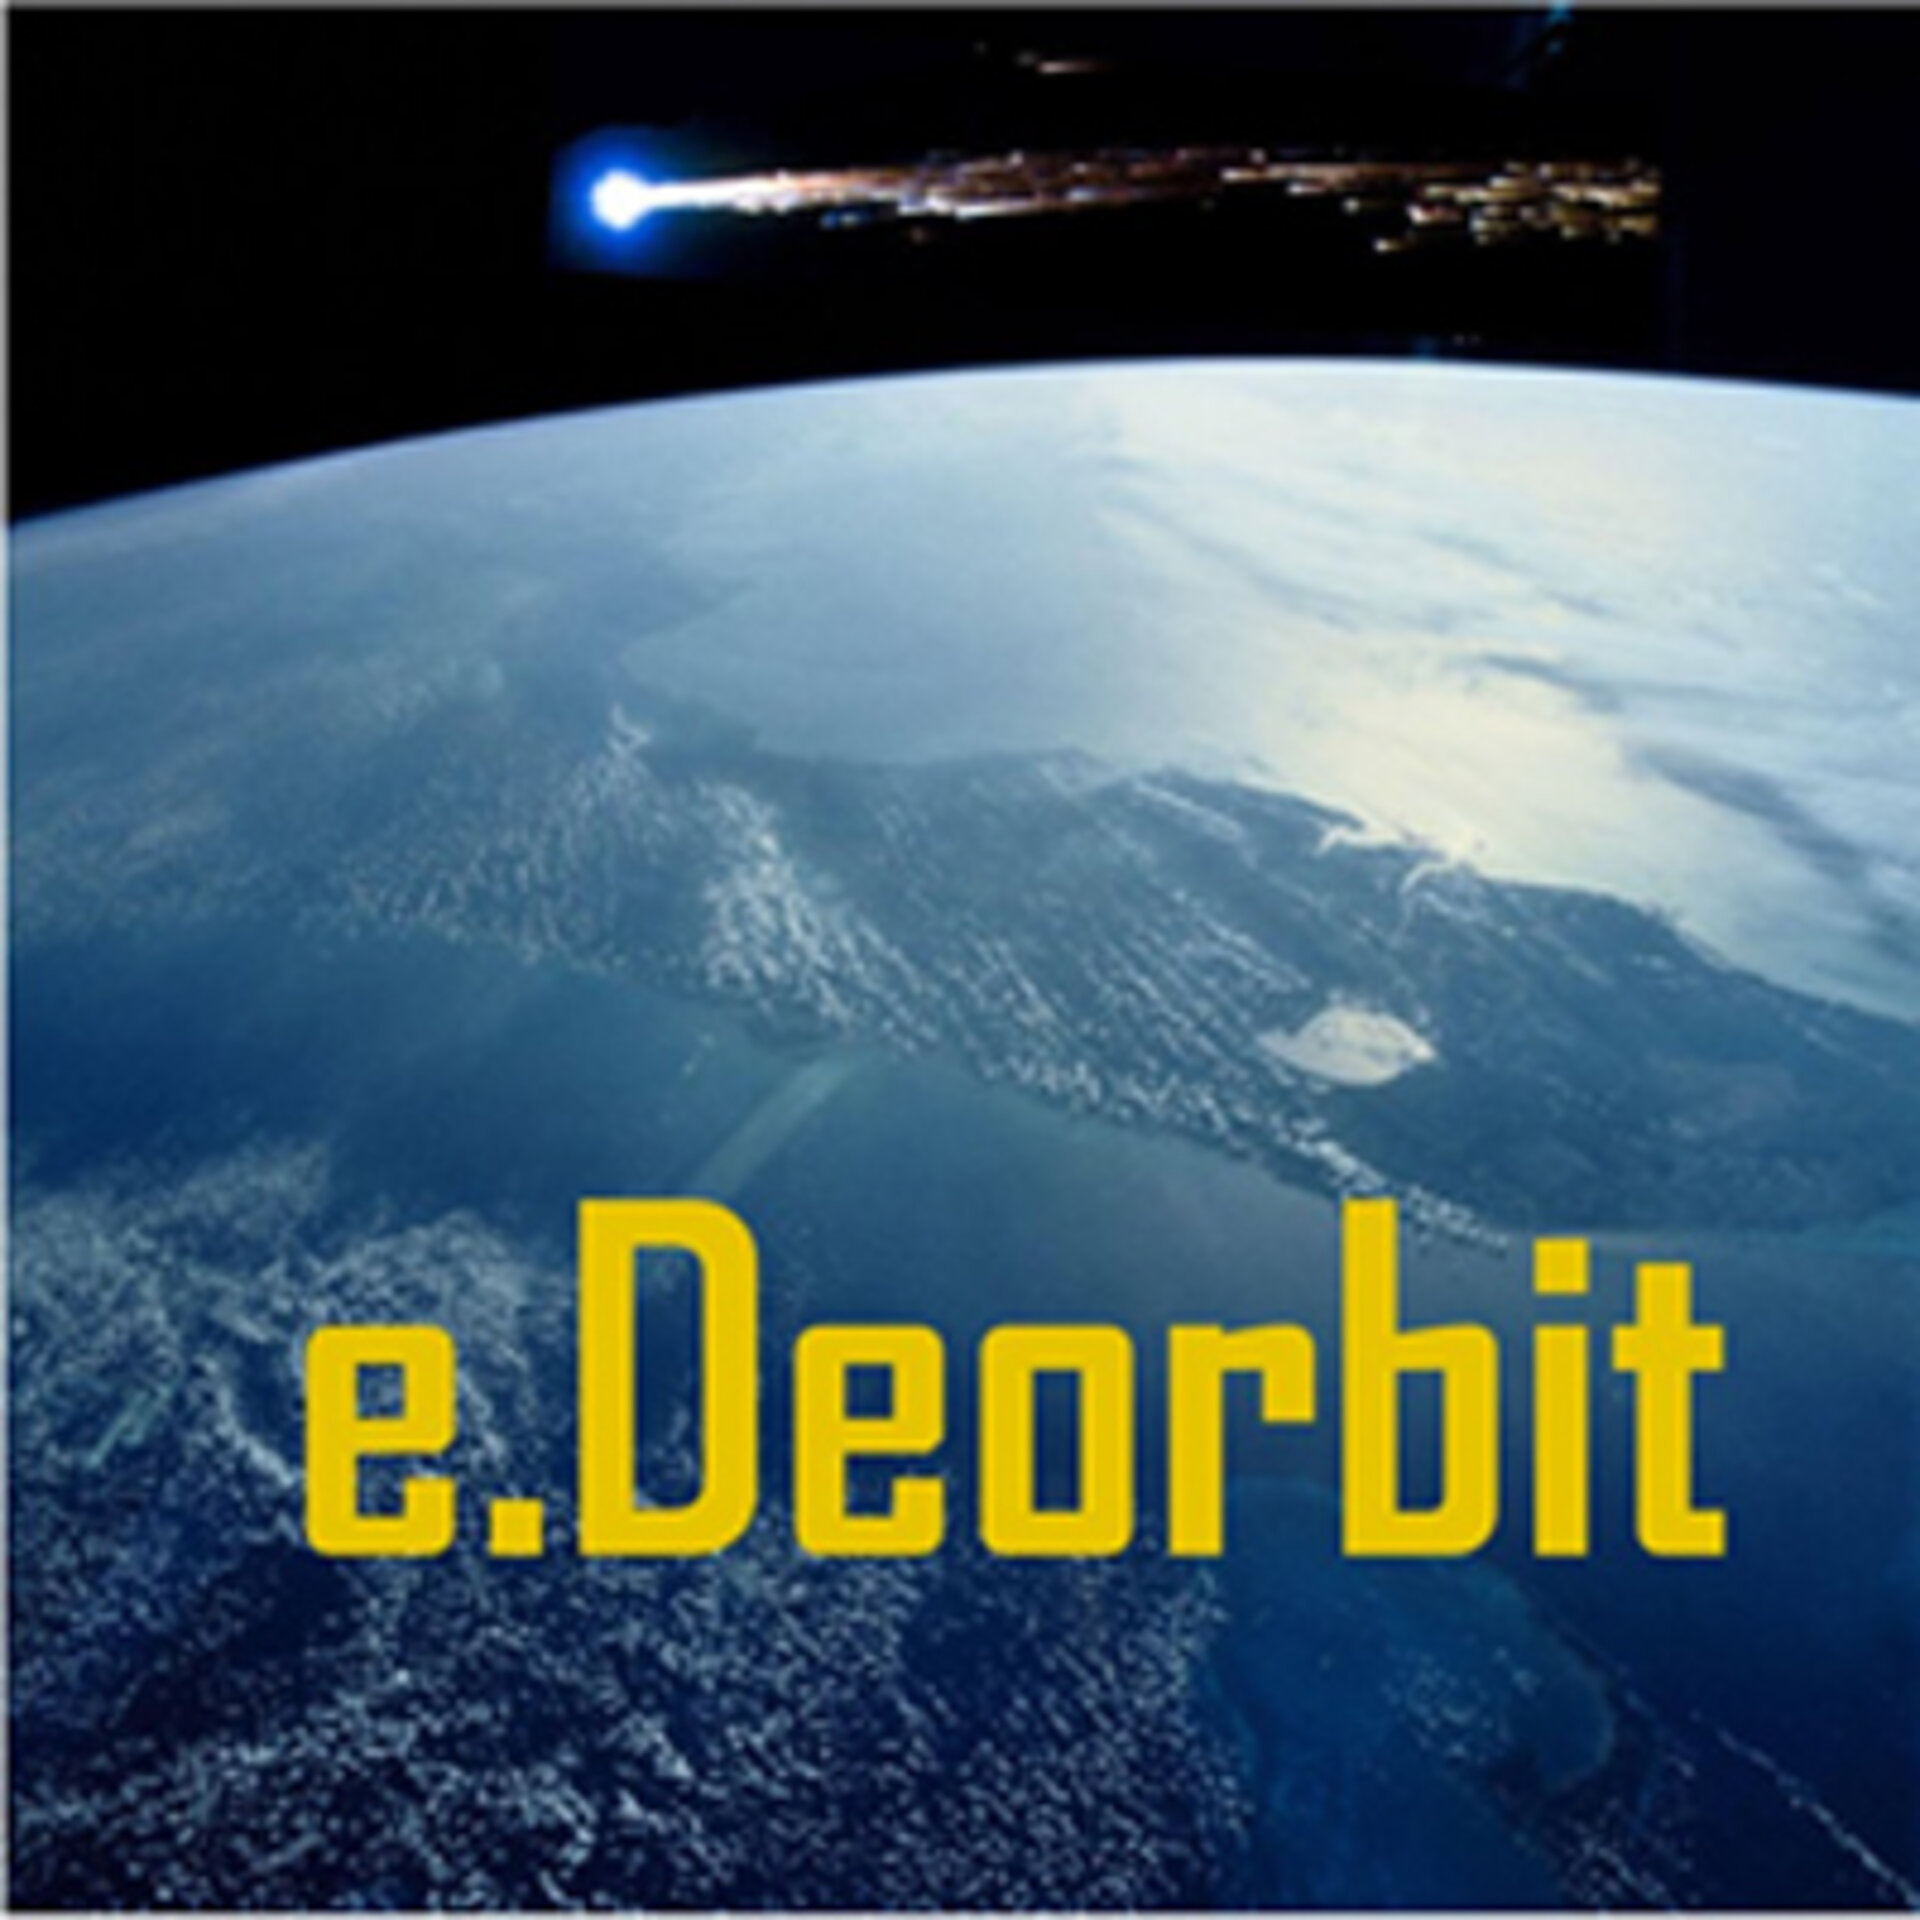 e.Deorbit CDF Study Logo